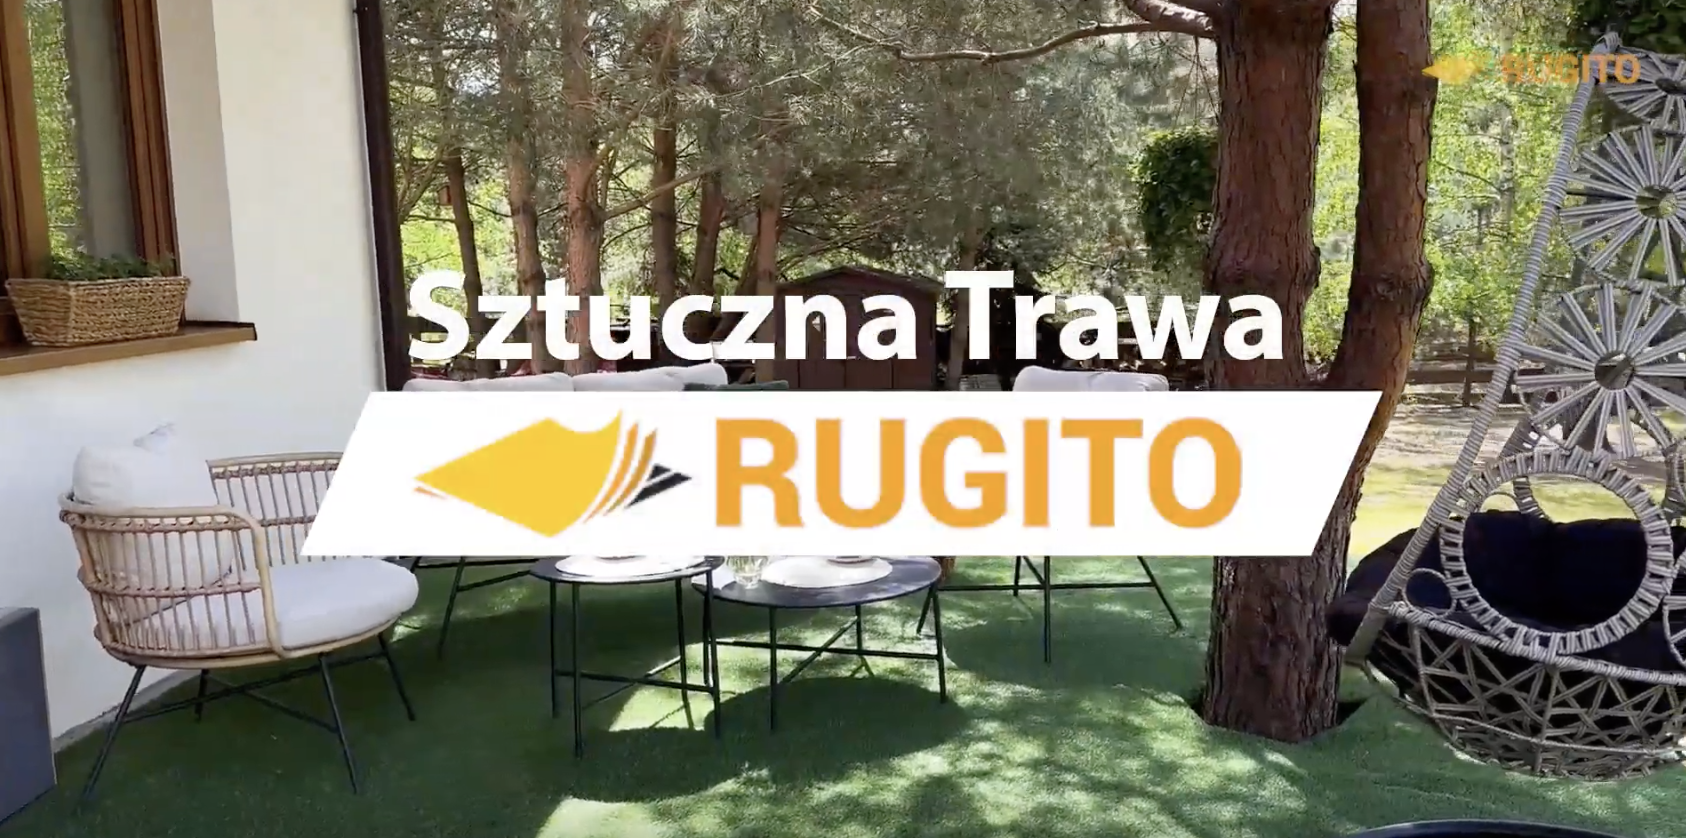 Sztuczna trawa zielona 20mm - rugito.pl - Rugito Radosław Bartosik